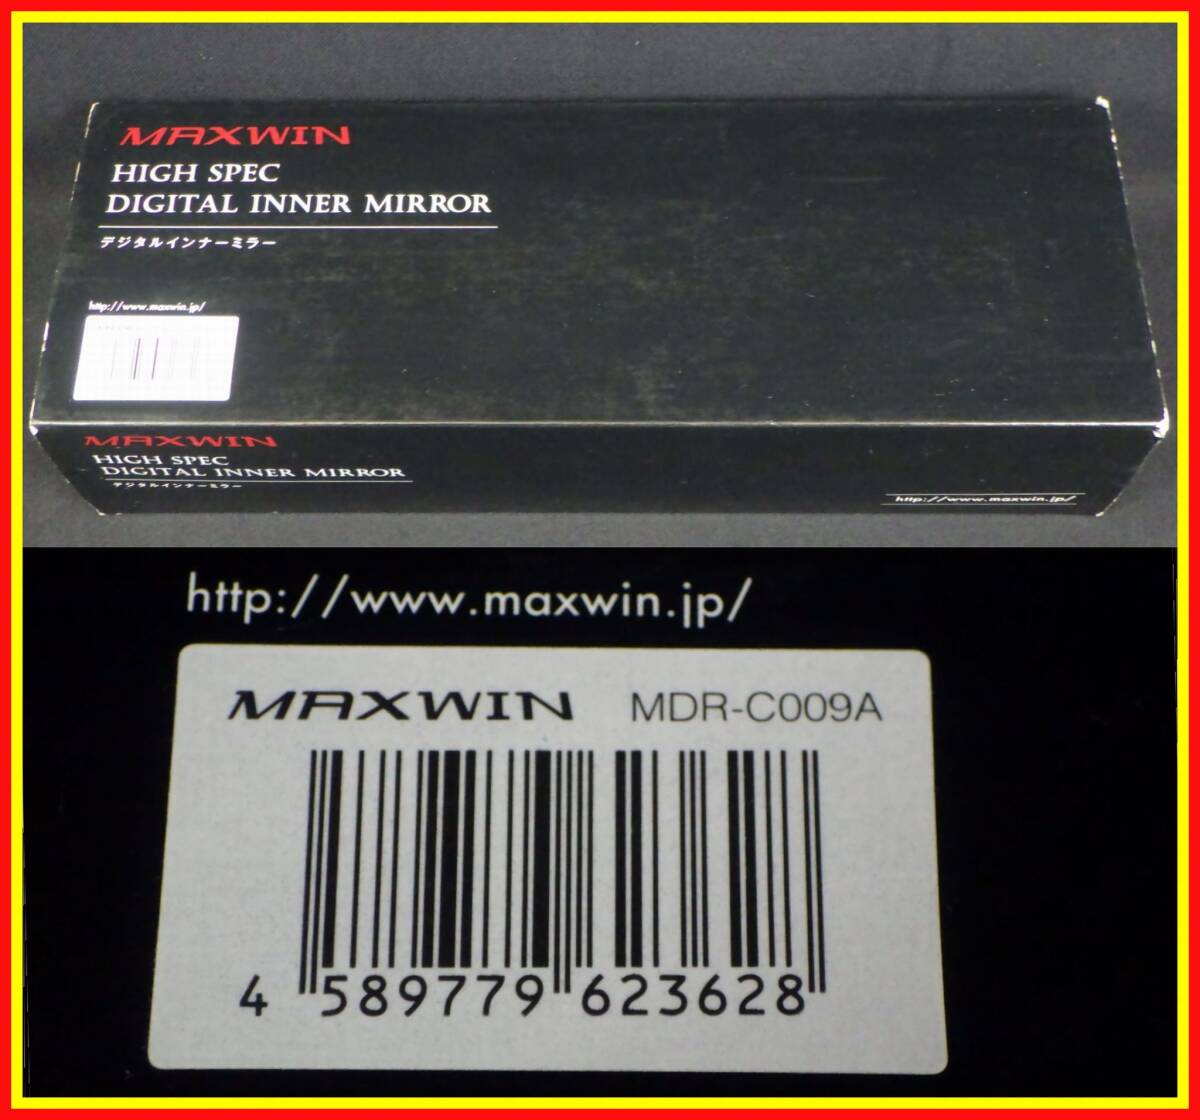 .9748 не использовался товары долгосрочного хранения MAX WIN MDR-C009A передний и задний (до и после) 2 камера регистратор пути (drive recorder) цифровой зеркала в салоне тип зеркала 